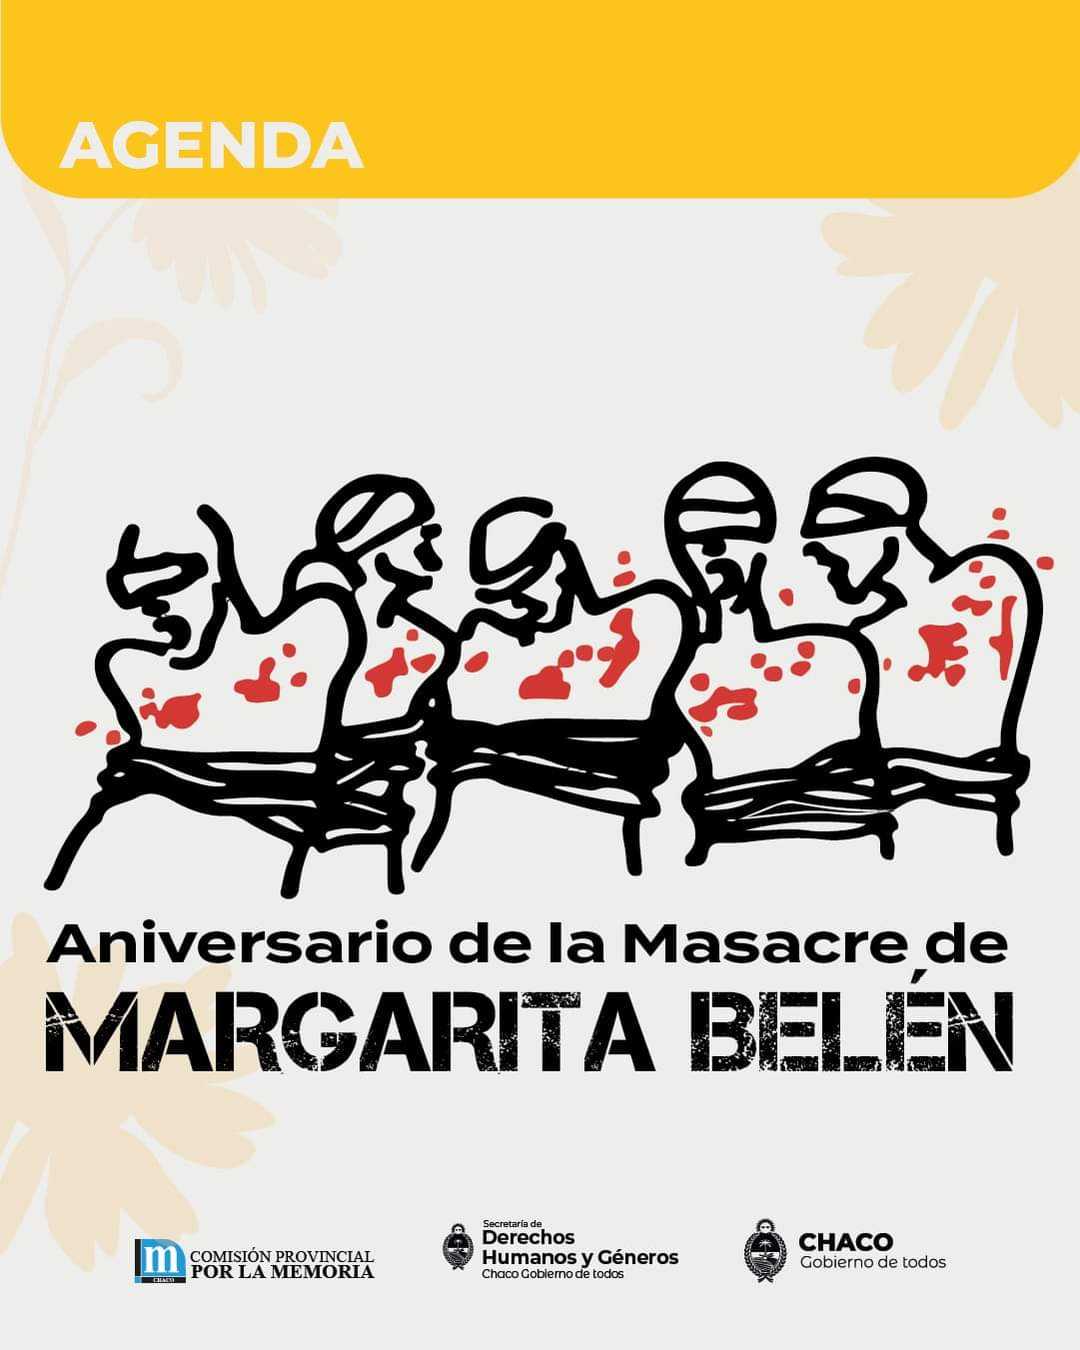 Aniversario de la Masacre de Margarita Belén: comienza la agenda en conmemoración a los 46 años